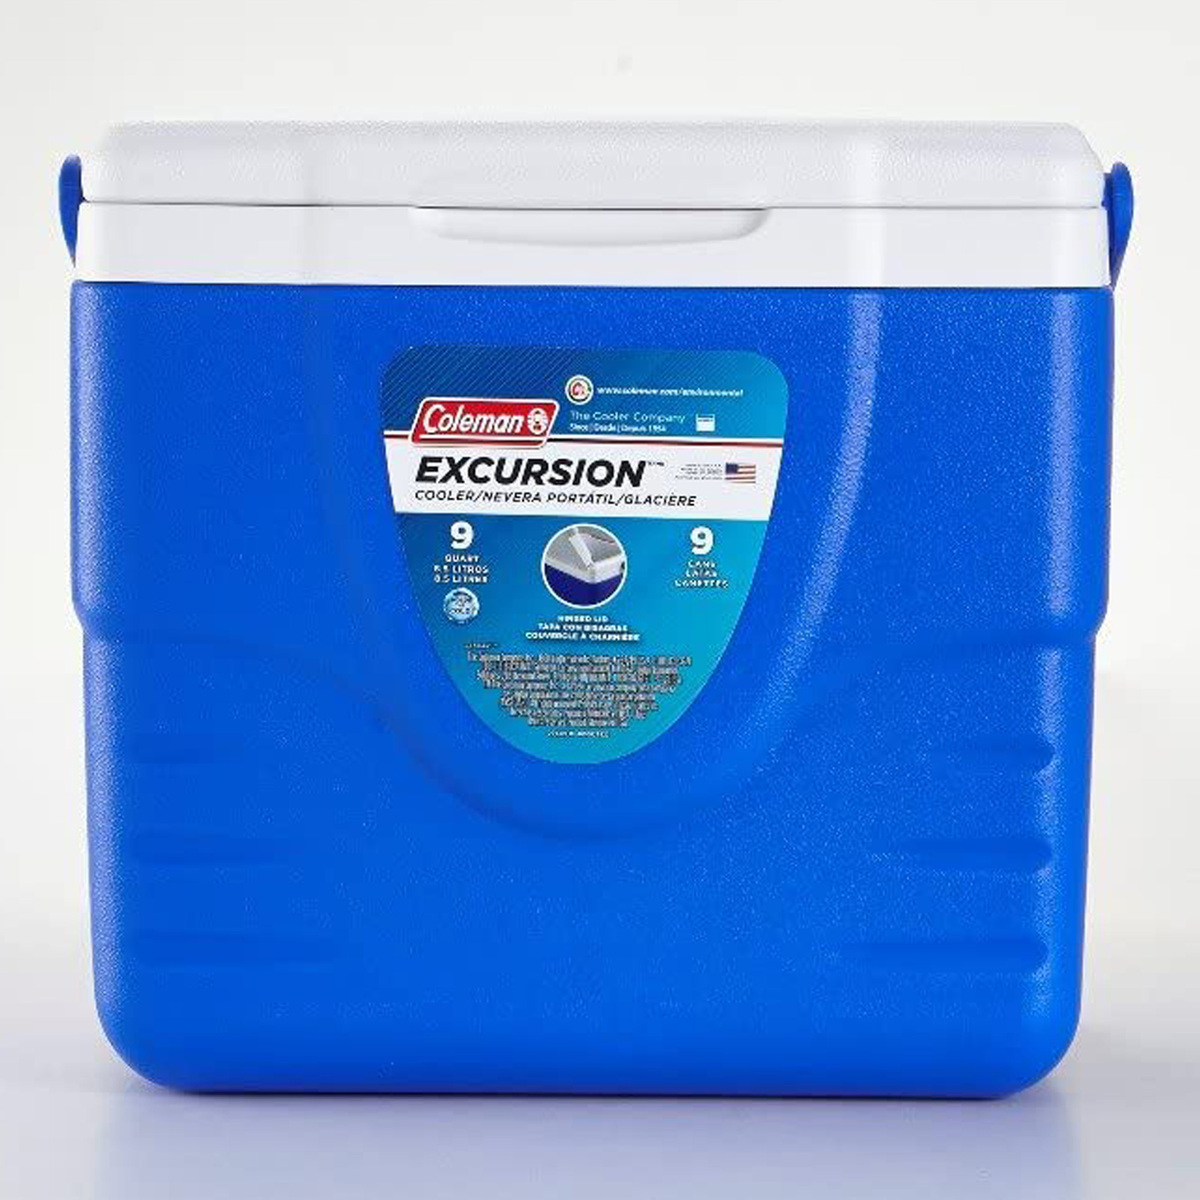 Coleman 9 Quart Excursion Cooler, Blue, 6209-718